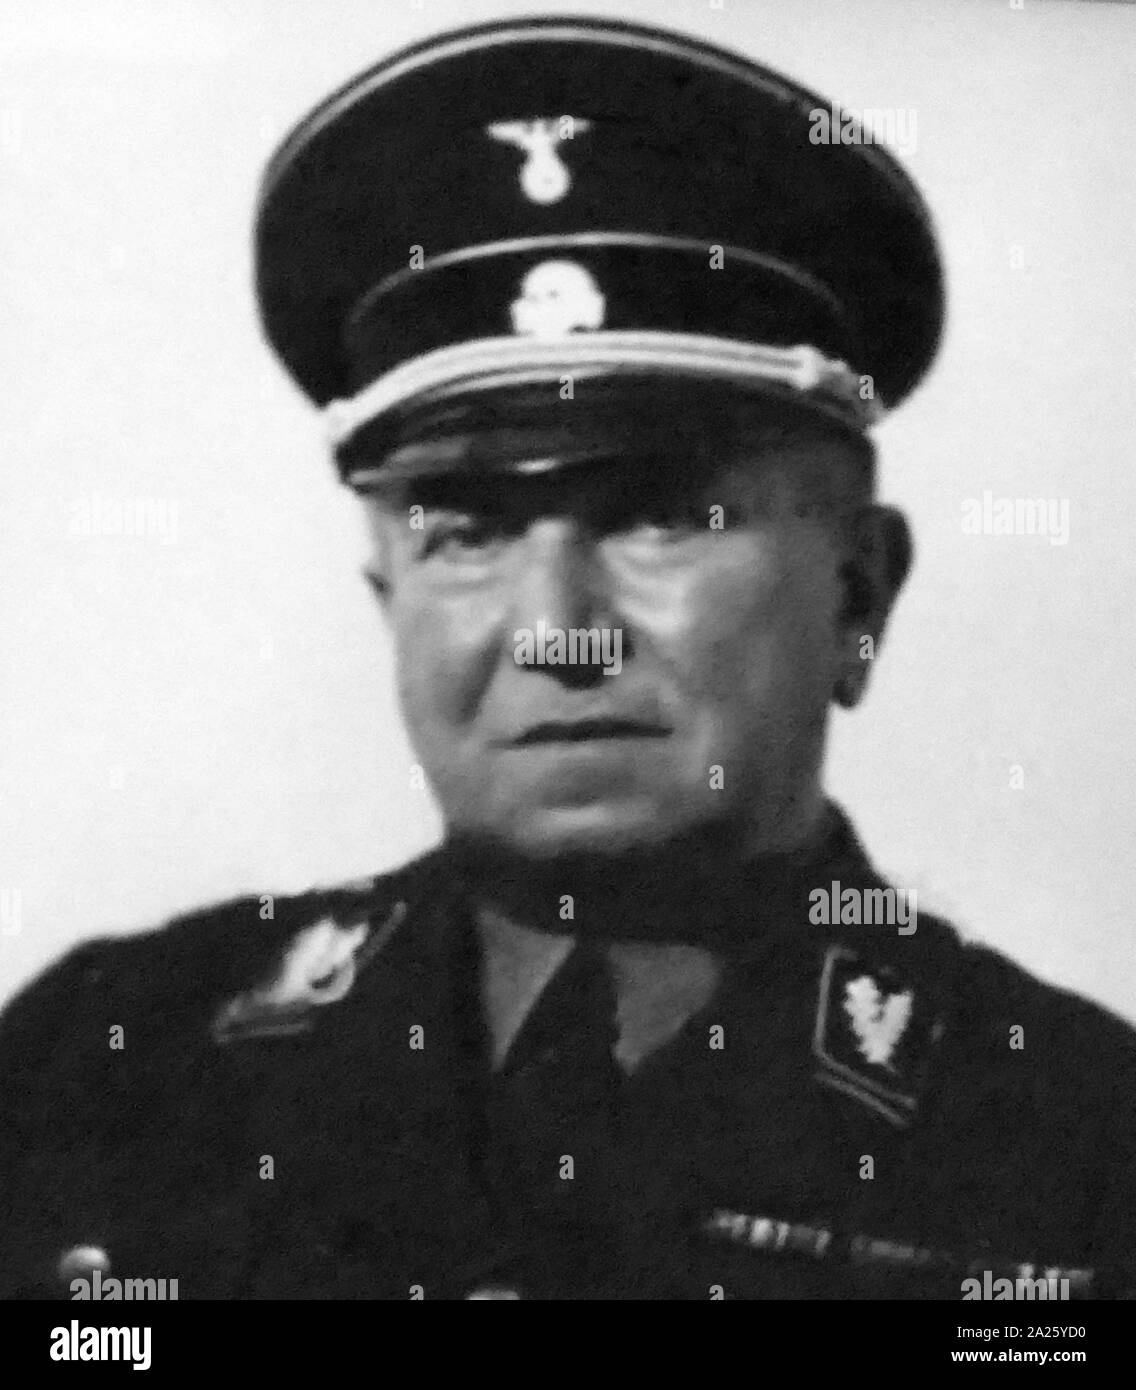 Une photographie de Karl Wolff. Karl Wolff (1900-1984) un membre de haut rang de la SS nazis qui avait le grade de SS-Obergruppenfuhrer dans la Waffen-SS. Banque D'Images